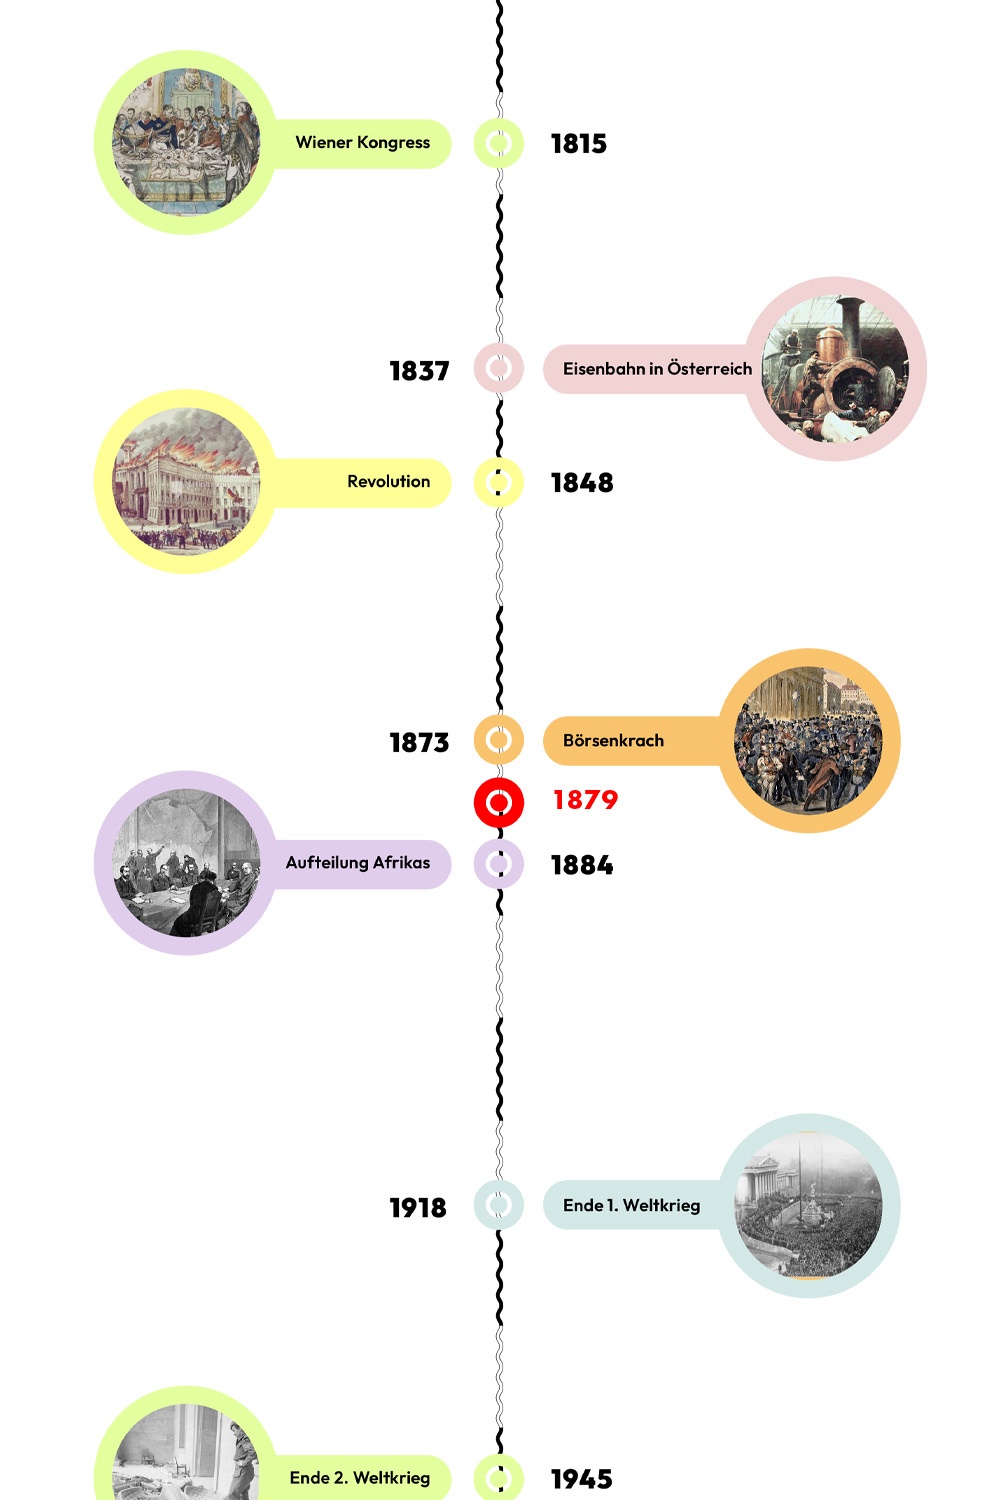 Zeitstrahl mit historischen Ereignissen - 1879 ist hervorgehoben. © wasbishergeschah.at